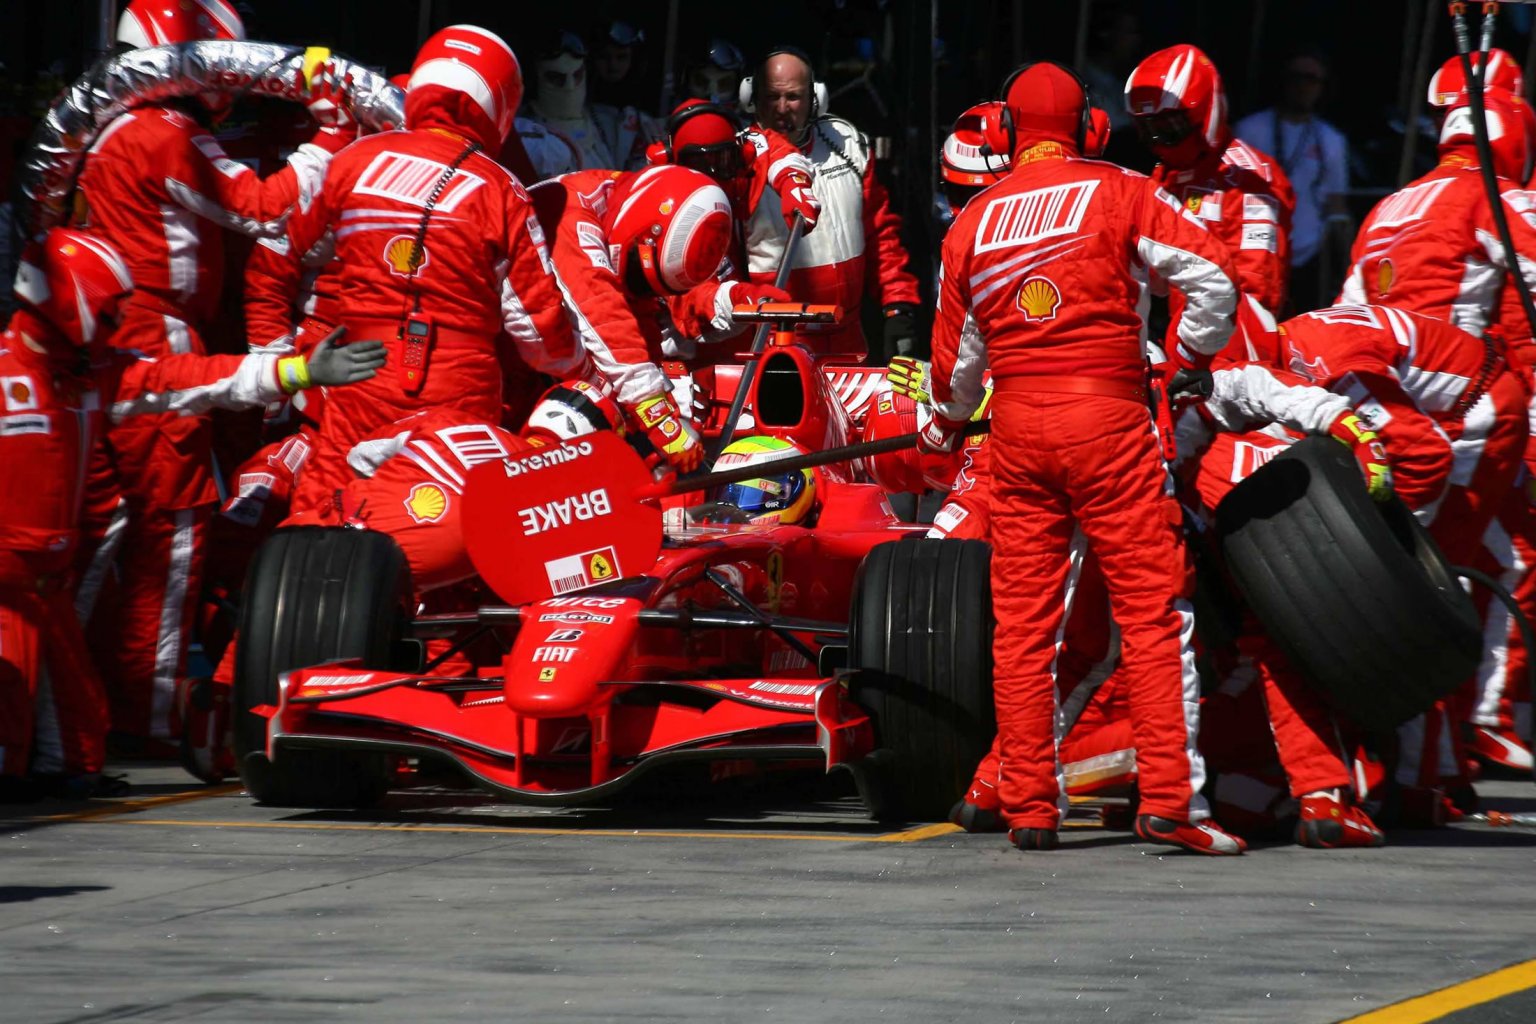 Wallpaper Grand Prix of Australia 2007. Marco's Formula 1 Page